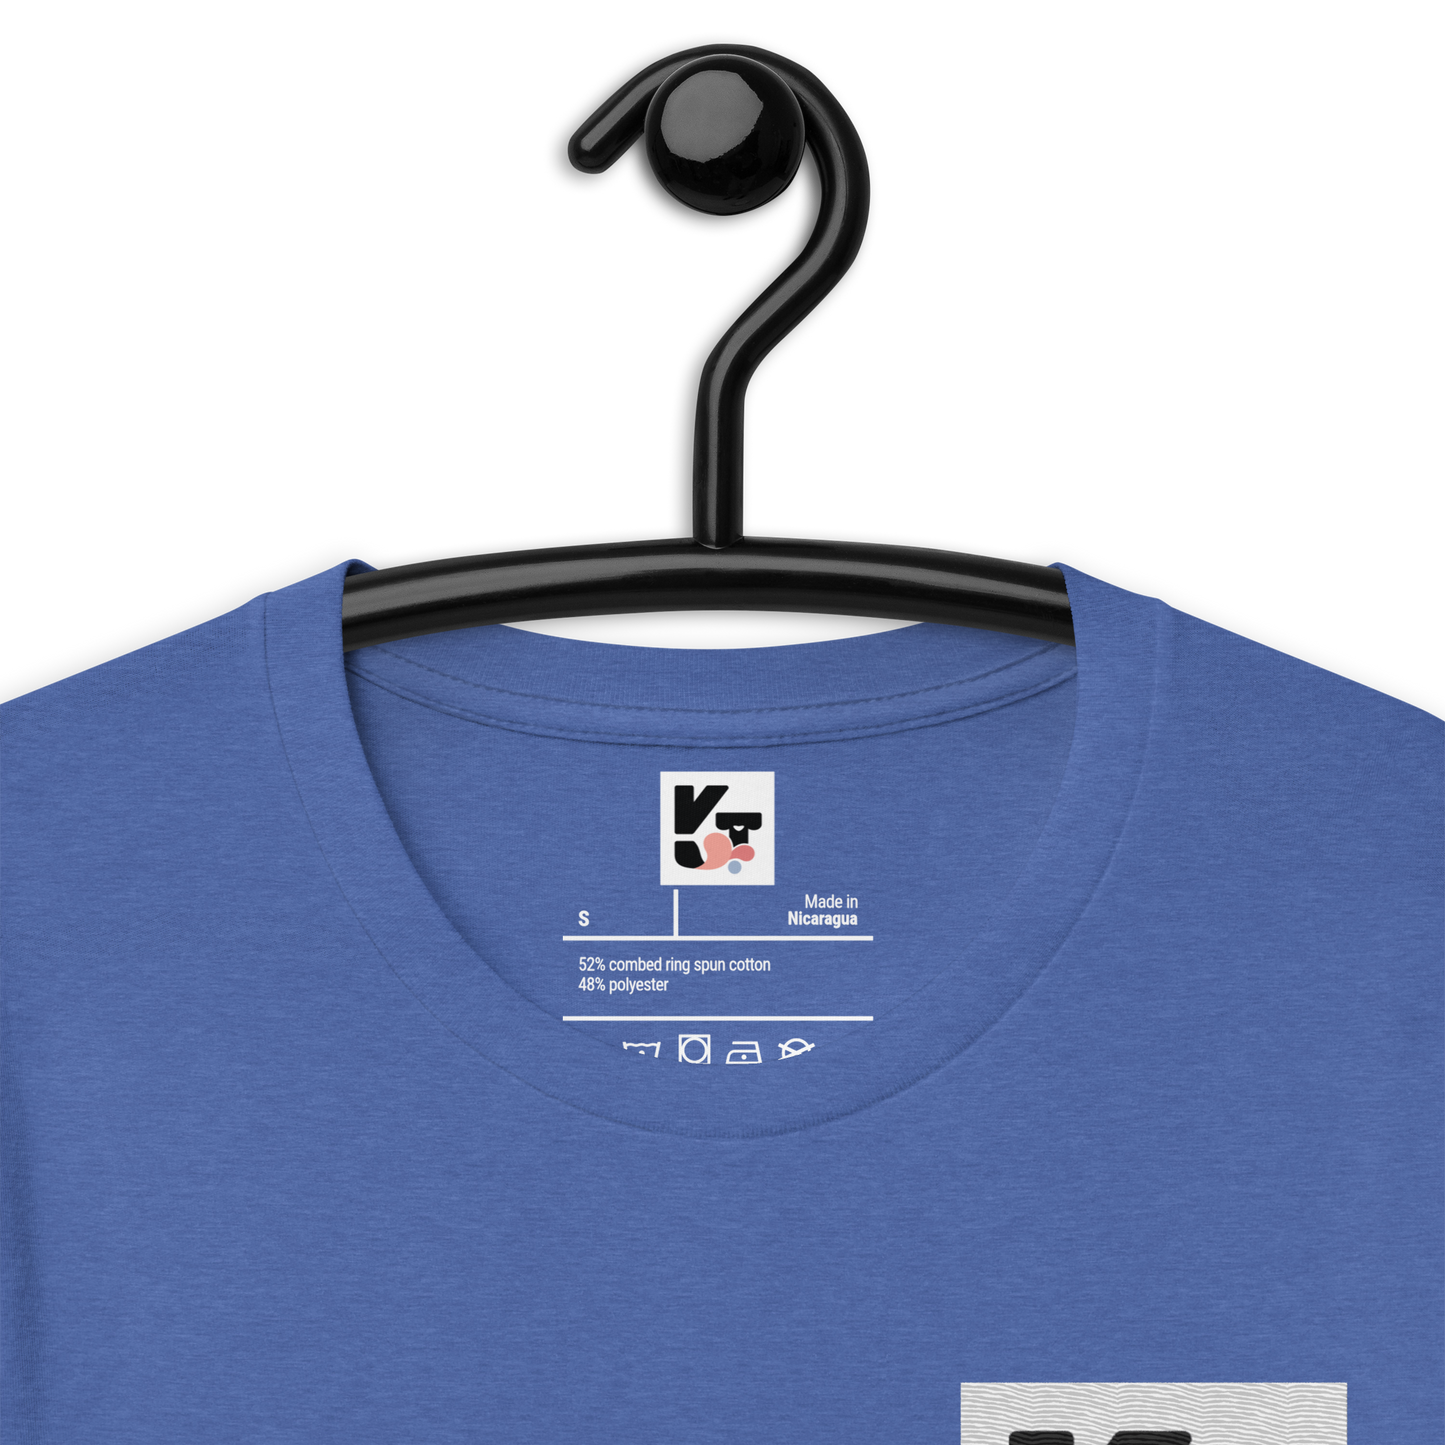 Unisex-T-Shirt "Wocker"